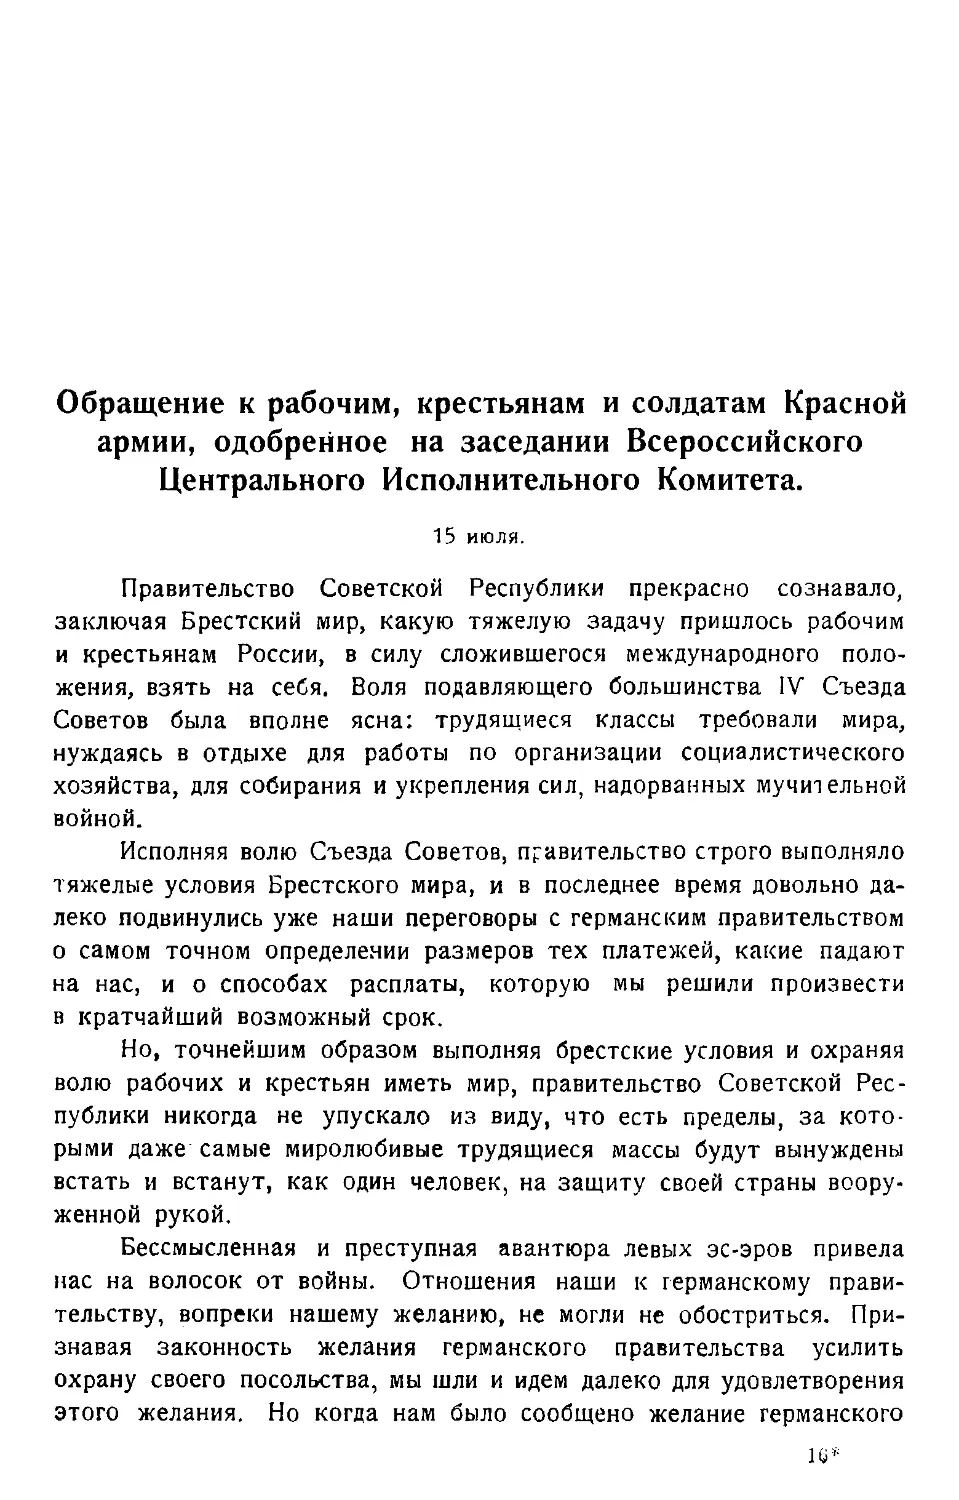 Обращение к рабочим, крестьянам и солдатам Красной армии, одобренное на заседании Всероссийского Центрального Исполнительного Комитета. 15 июля.